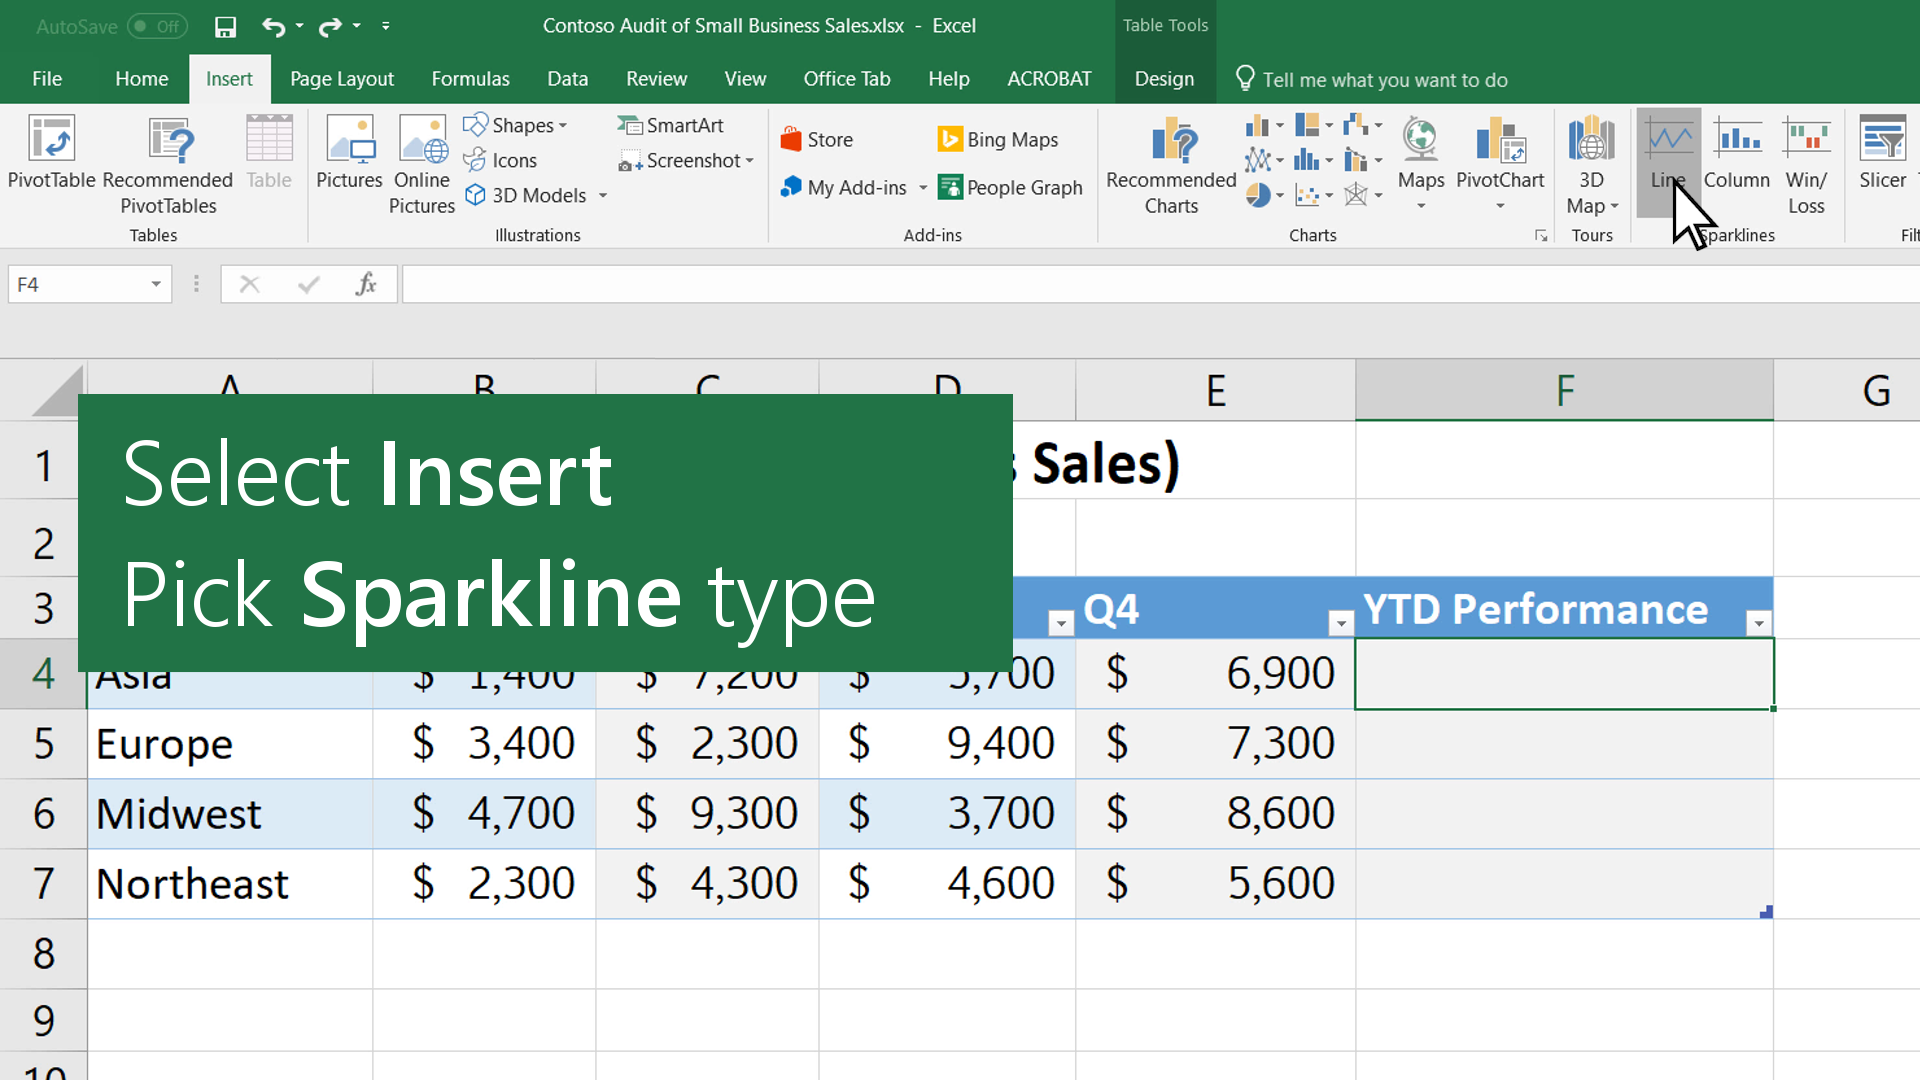 Bạn đang tìm cách biểu thị dữ liệu một cách trực quan và đẹp mắt hơn? Hãy xem cách vẽ đồ thị sparkline và tận dụng lợi thế của biểu đồ thu nhỏ trong Excel. Những xu hướng dữ liệu sẽ được hiển thị một cách rõ ràng và dễ hiểu hơn. Bạn sẽ được hỗ trợ tốt nhất để tăng hiệu quả công việc của mình.